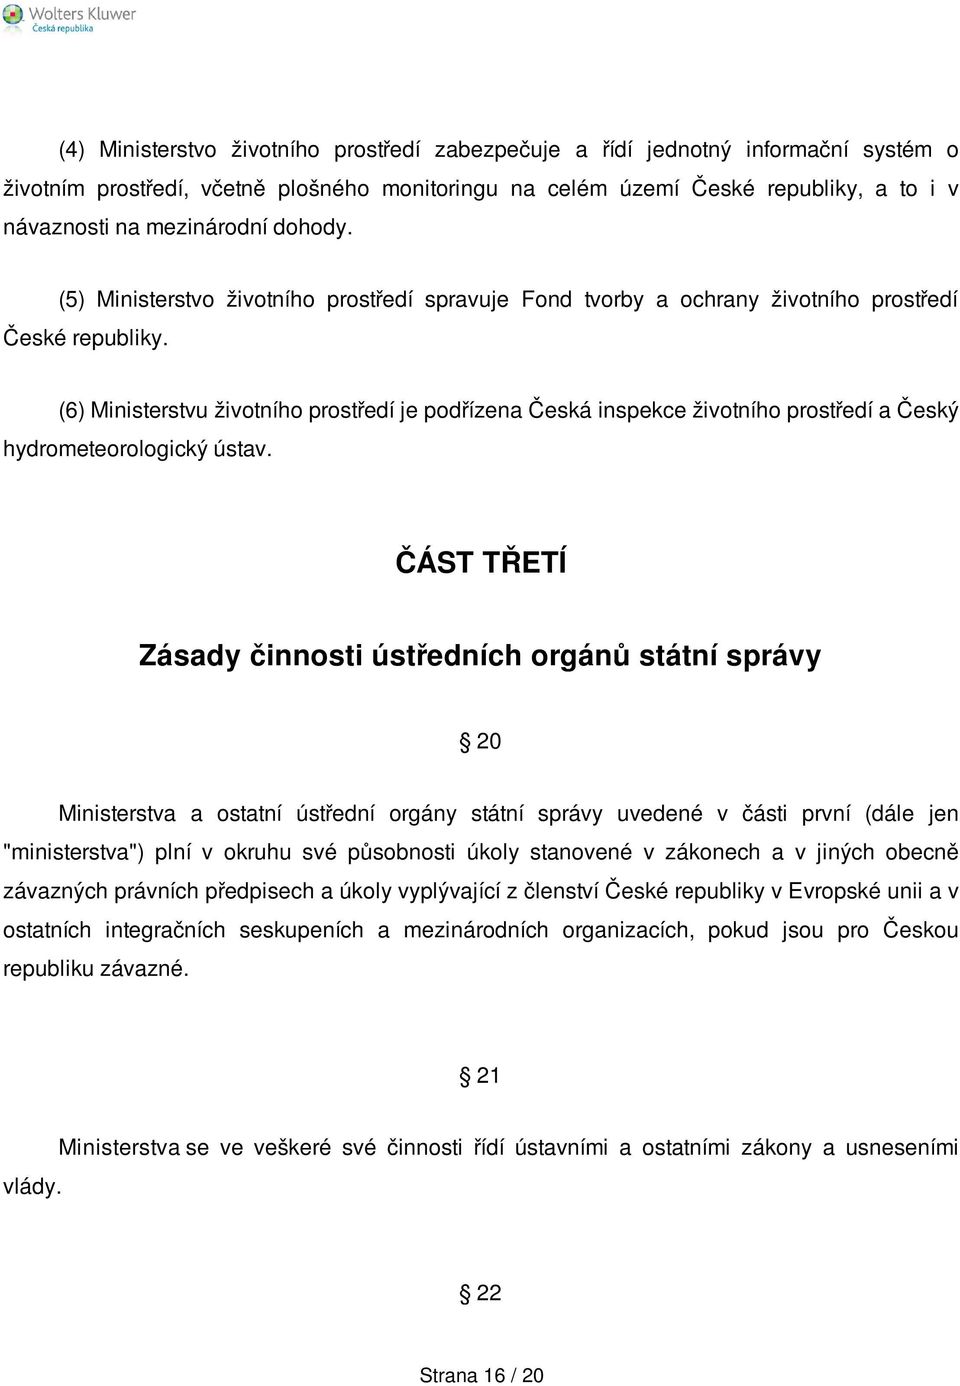 (6) Ministerstvu životního prostředí je podřízena Česká inspekce životního prostředí a Český hydrometeorologický ústav.